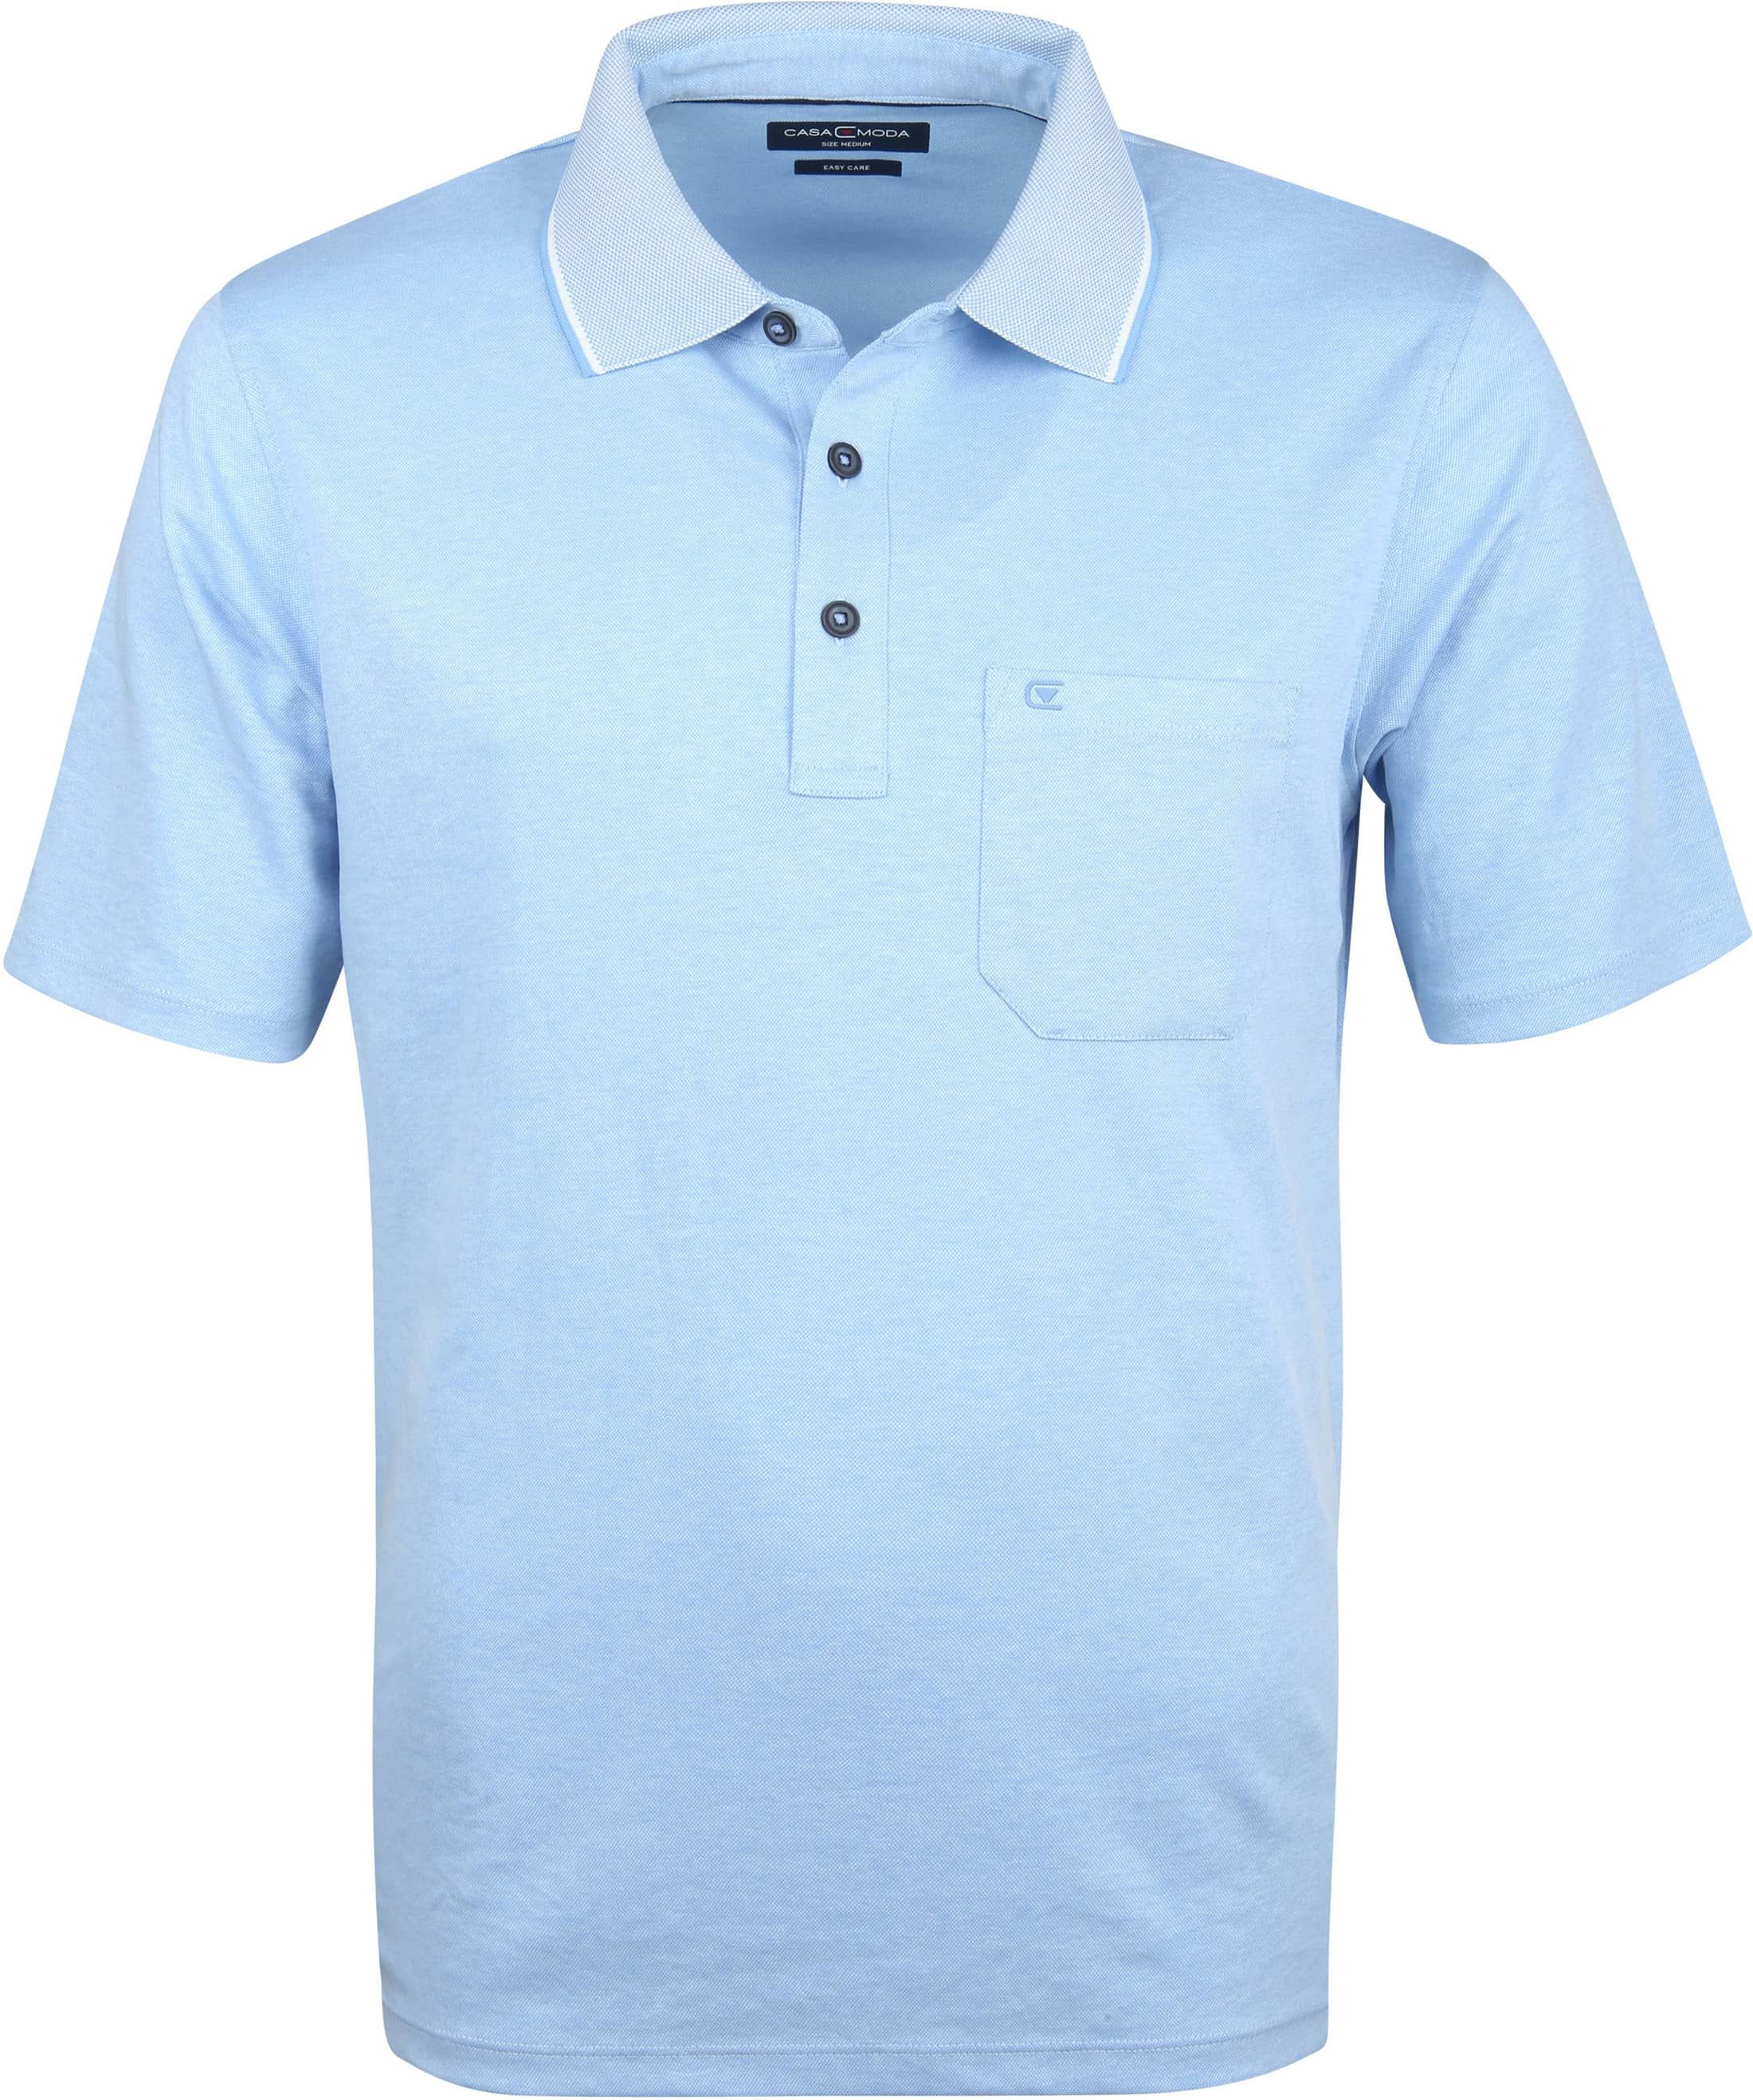 Casa Moda Polo Shirt Blue size 3XL